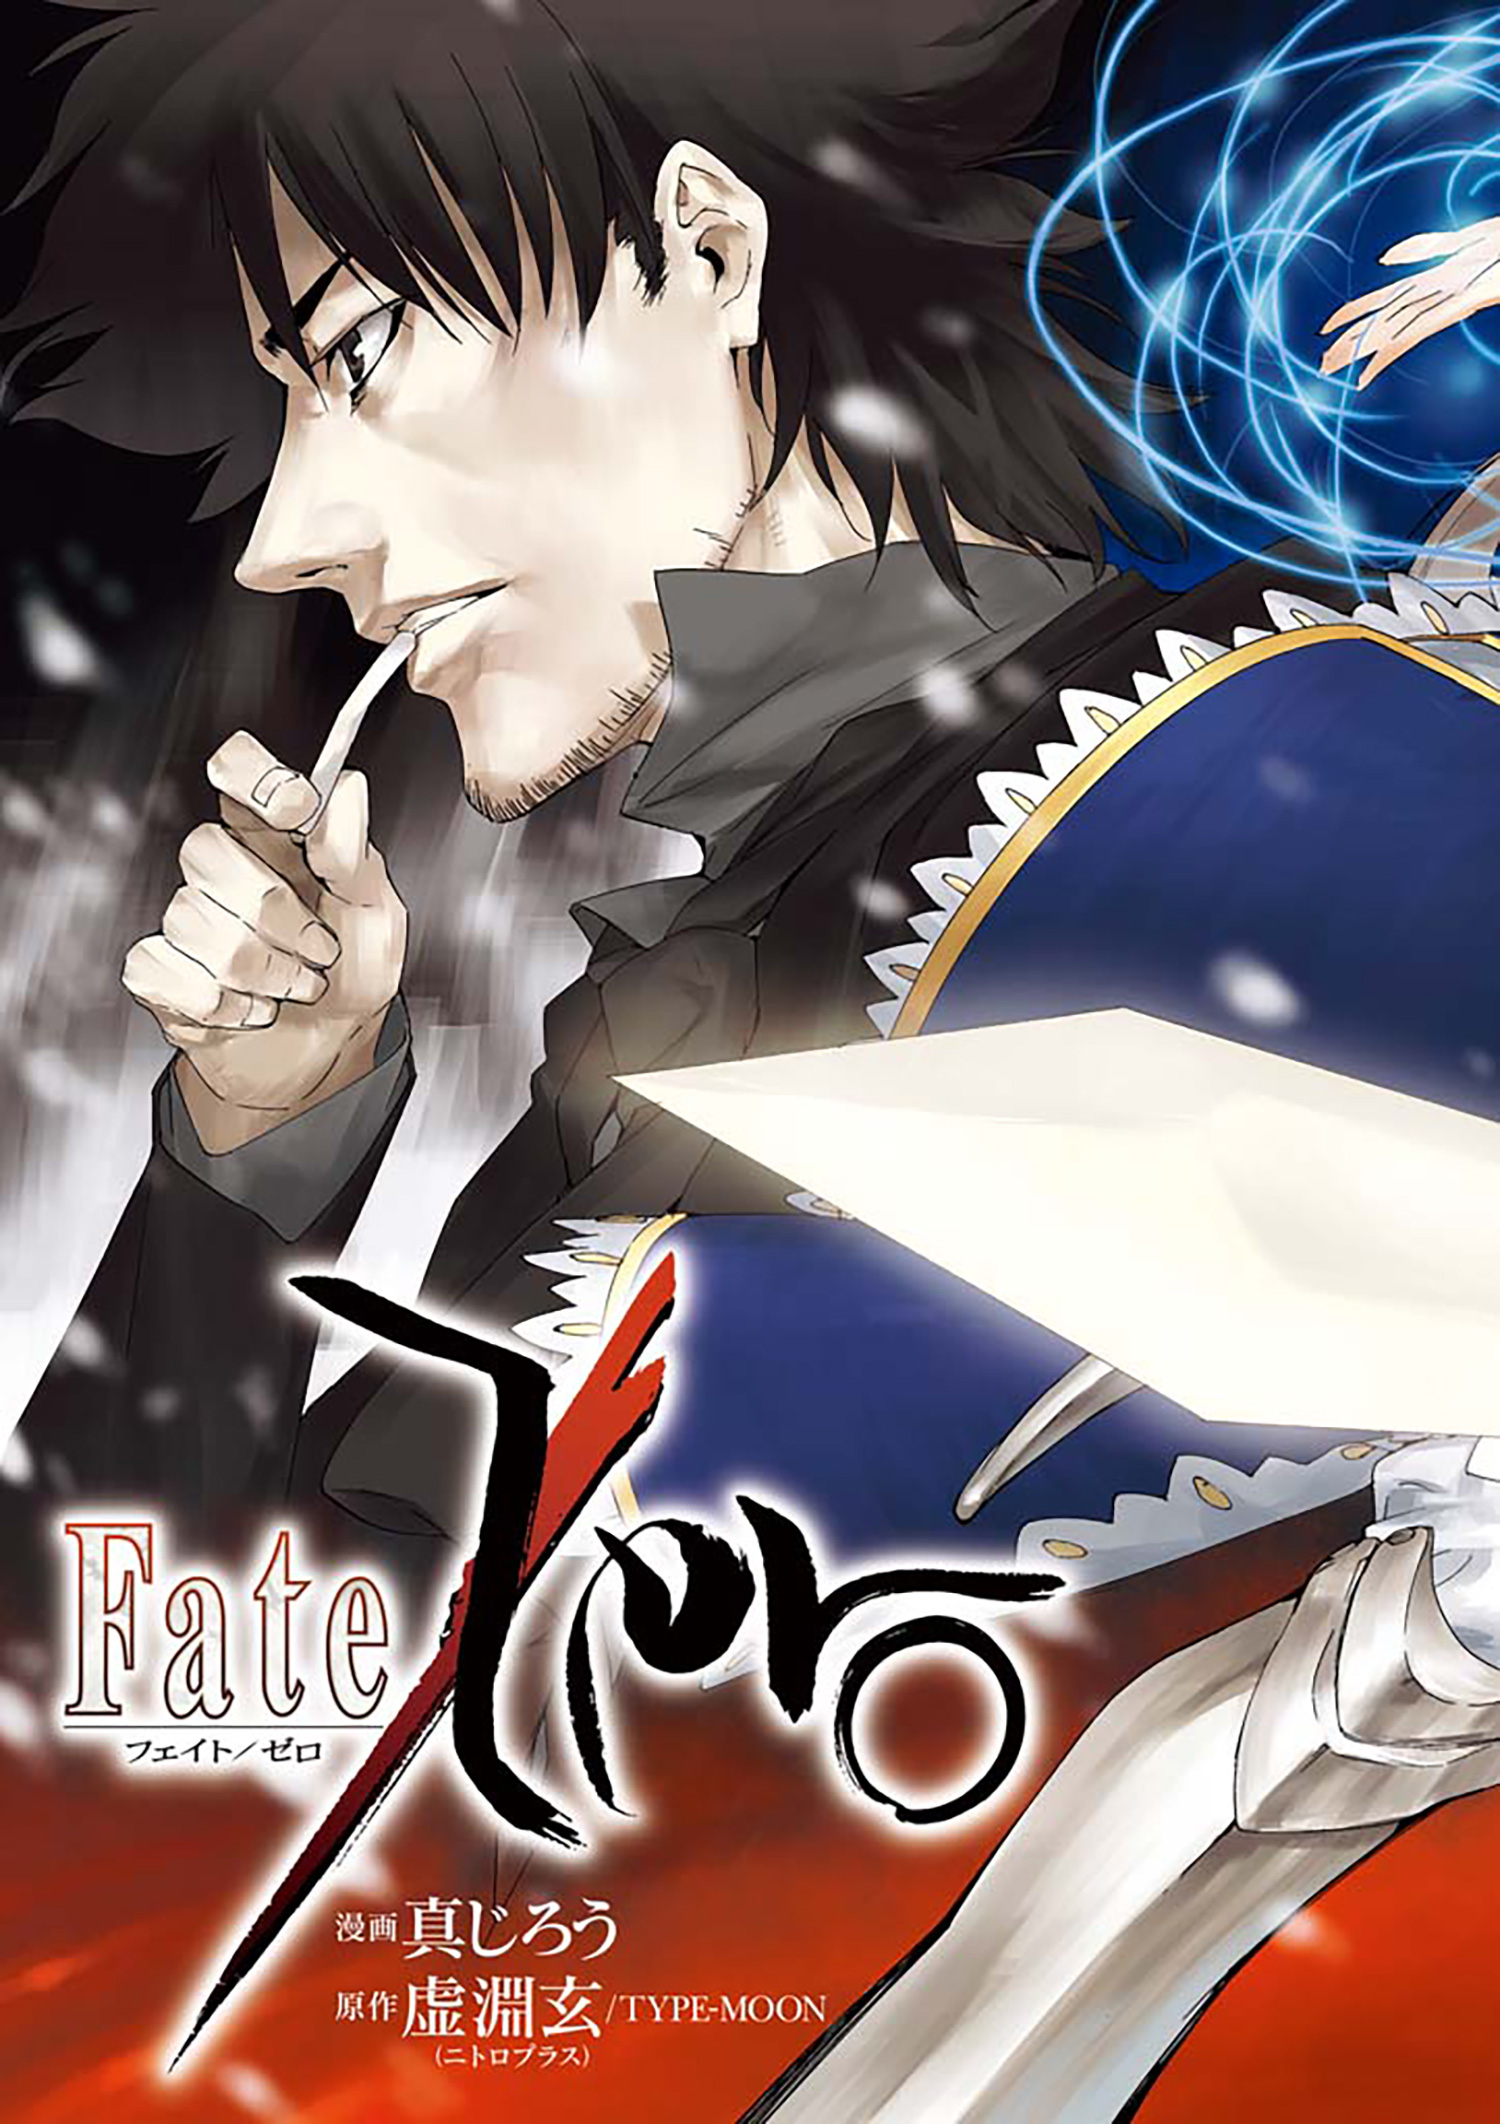 Fate Zero 第1話 Type Moonコミックエース 無料で漫画が読めるオンラインマガジン